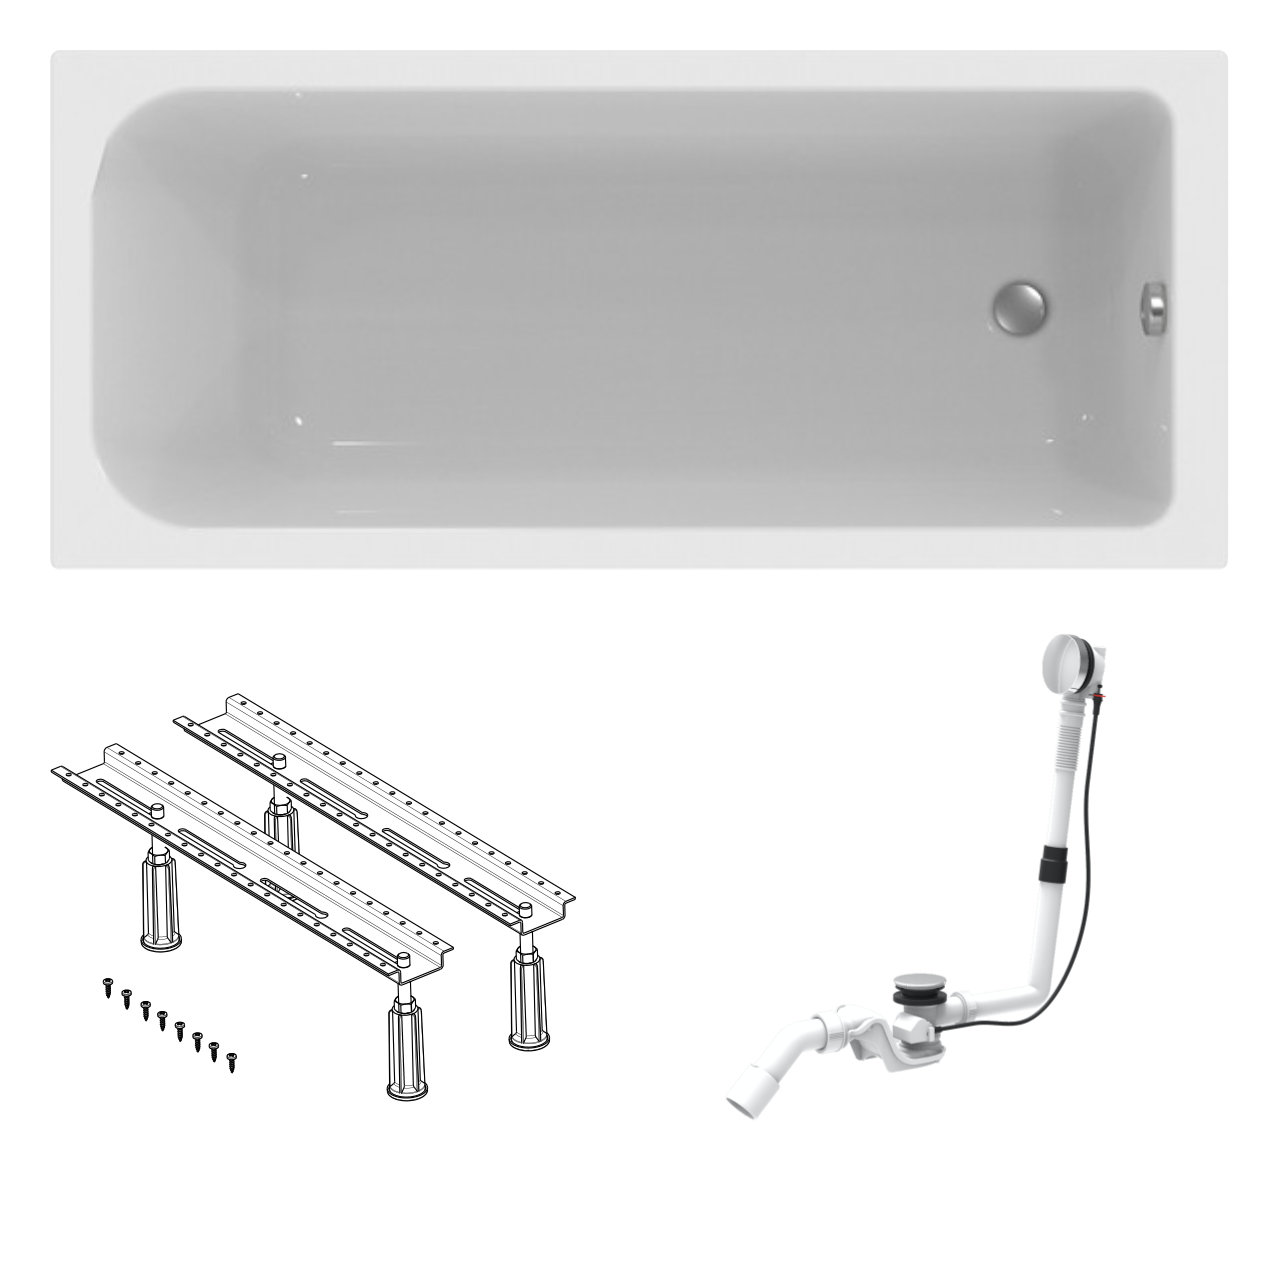 Acryl Körperform-Badewanne made by Ideal Standard 170 x 75 cm mit Füßen und Ablaufgarnitur